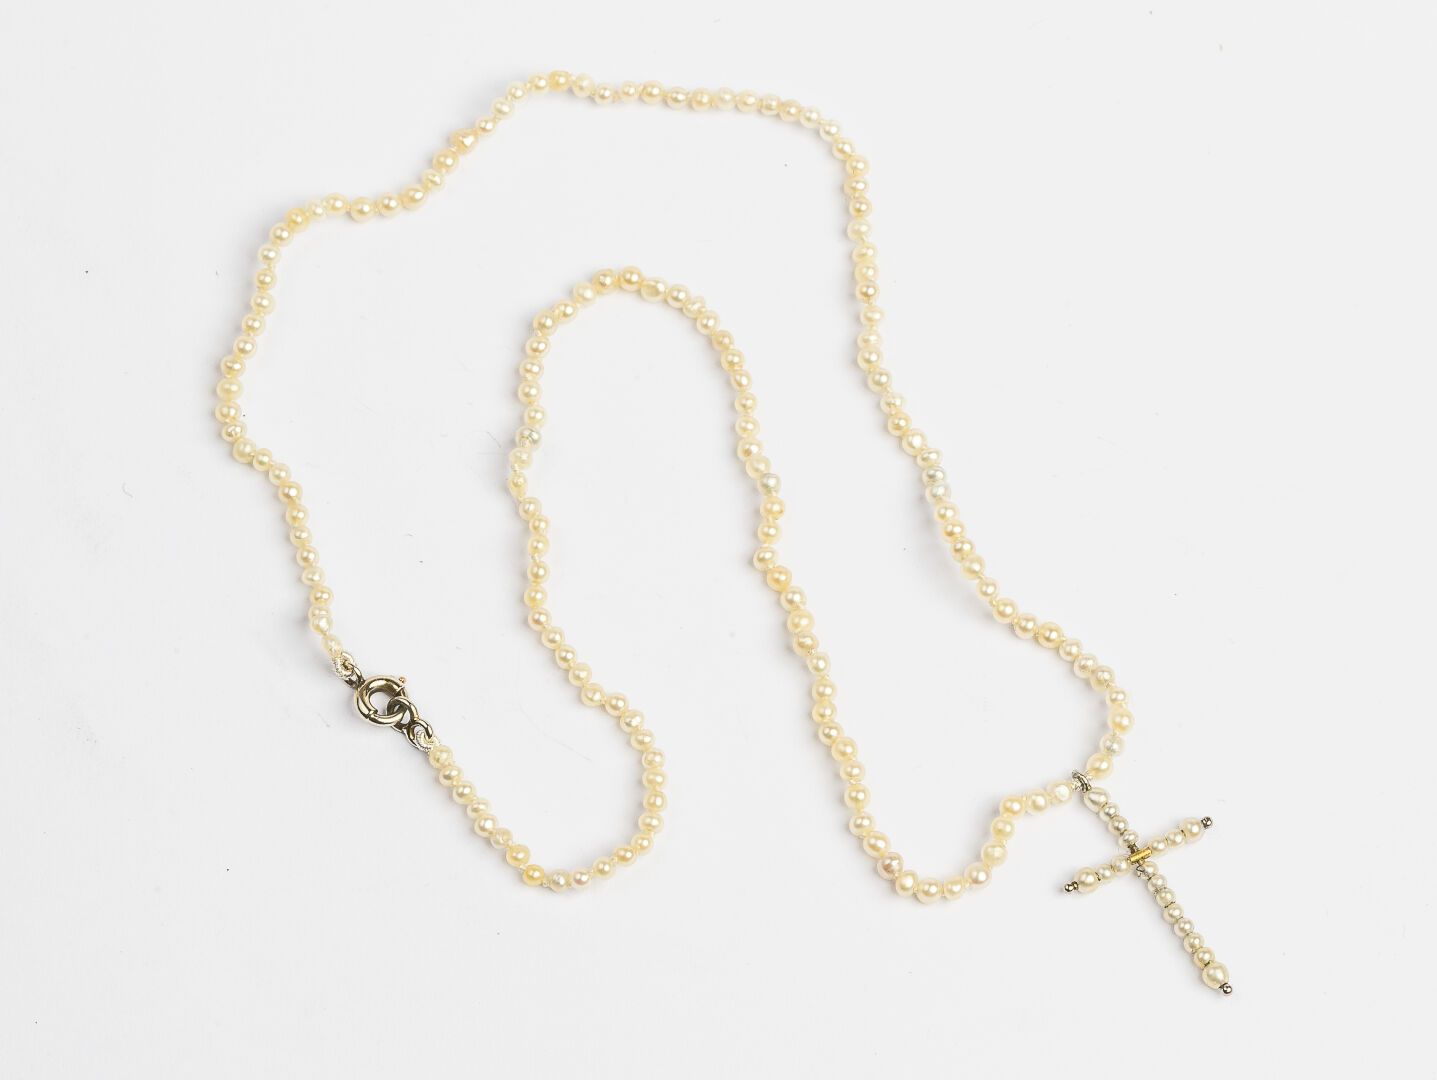 Null 项链和它的十字架吊坠

在珍珠种和白金750°/°°。

约1910年

毛重 : 2,66 g